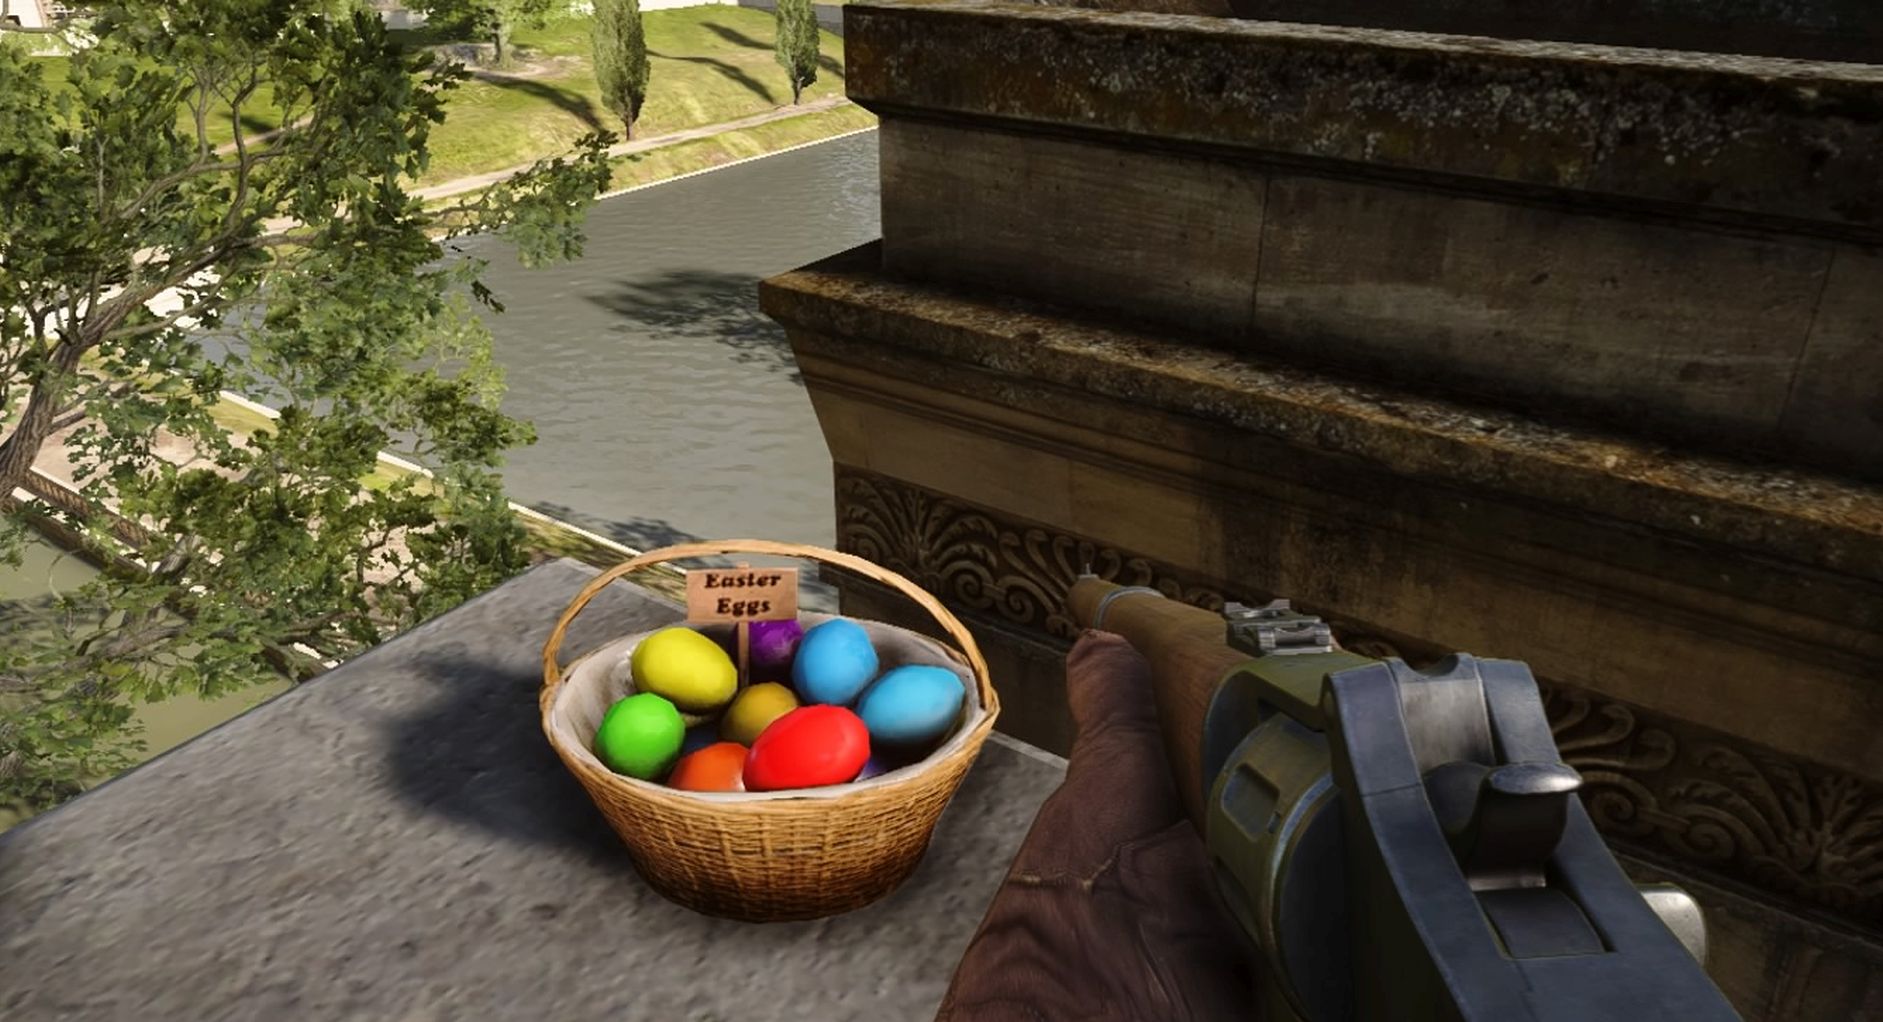 Easter Egg basket far